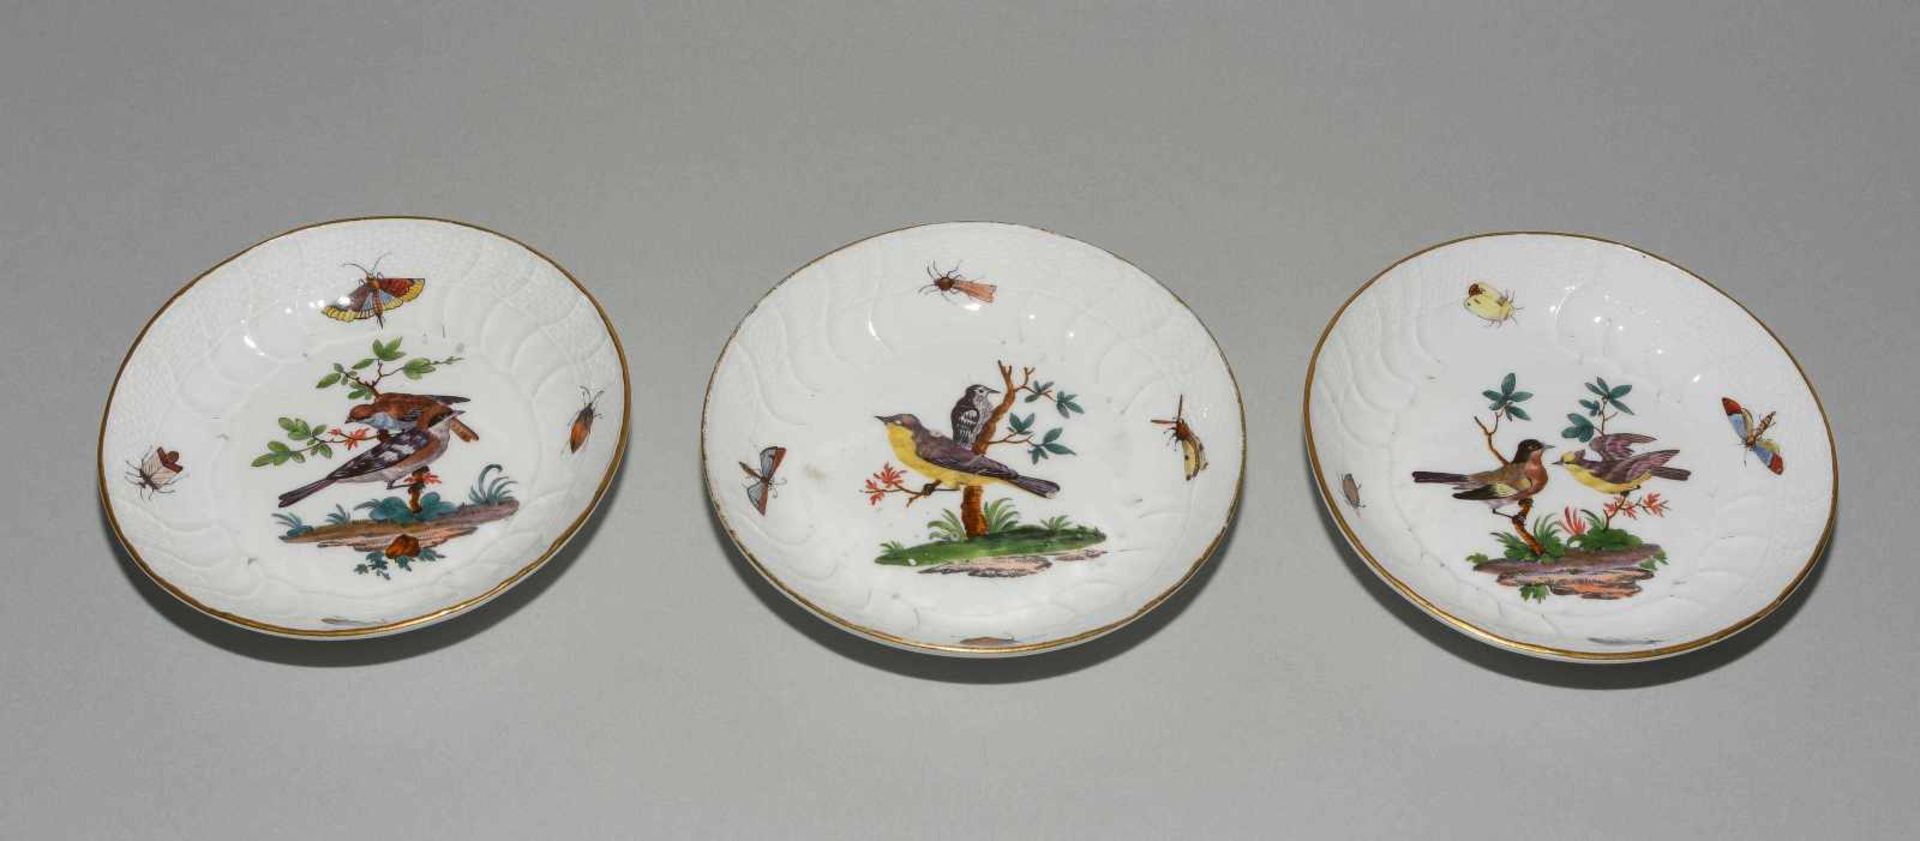 Kaffee- und Teeservice, Meissen Um 1770. Porzellan, Neuozier-Reliefdekor, polychrome Vogelmalerei - Bild 38 aus 64